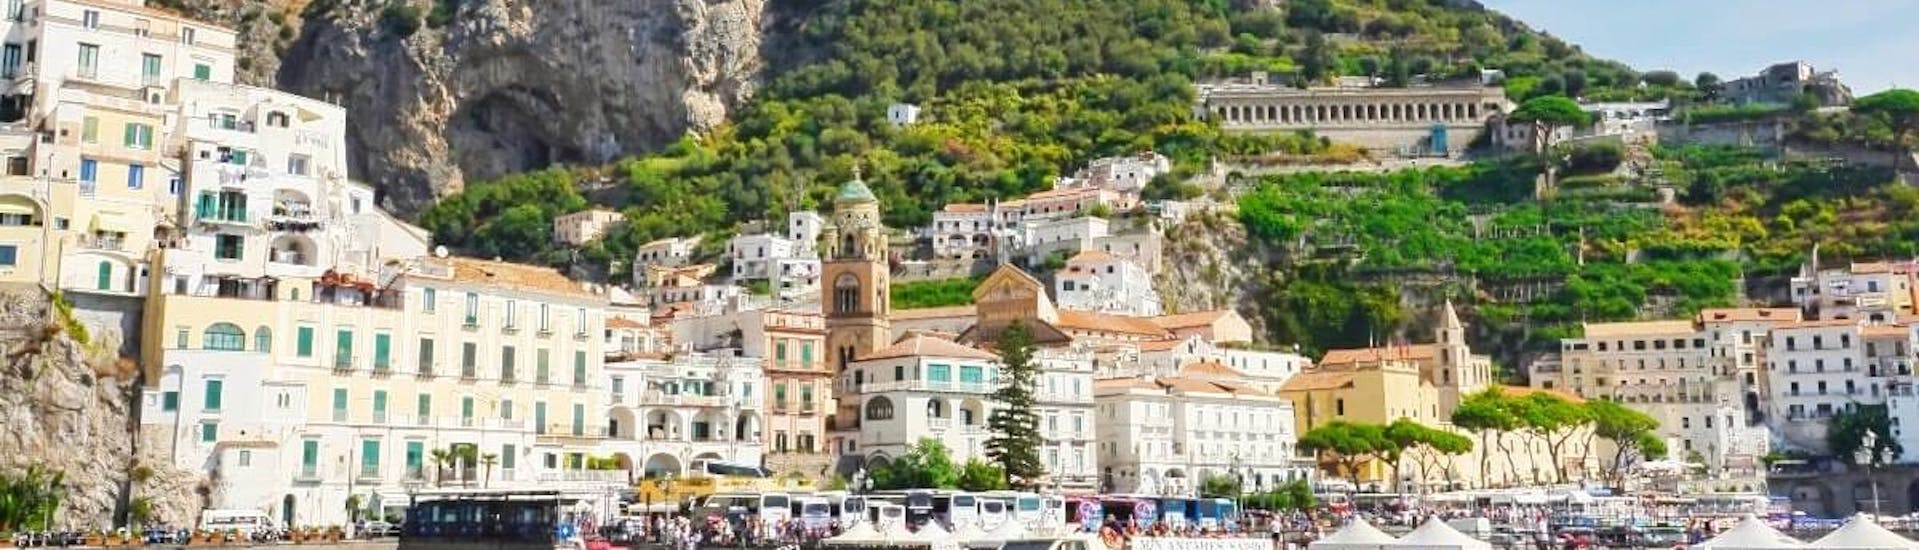 Vue d'Amalfi qui peut être visitée pendant la Balade en bateau de Pouzzoles à Capri et Amalfi avec Déjeuner avec Gestour Pozzuoli.